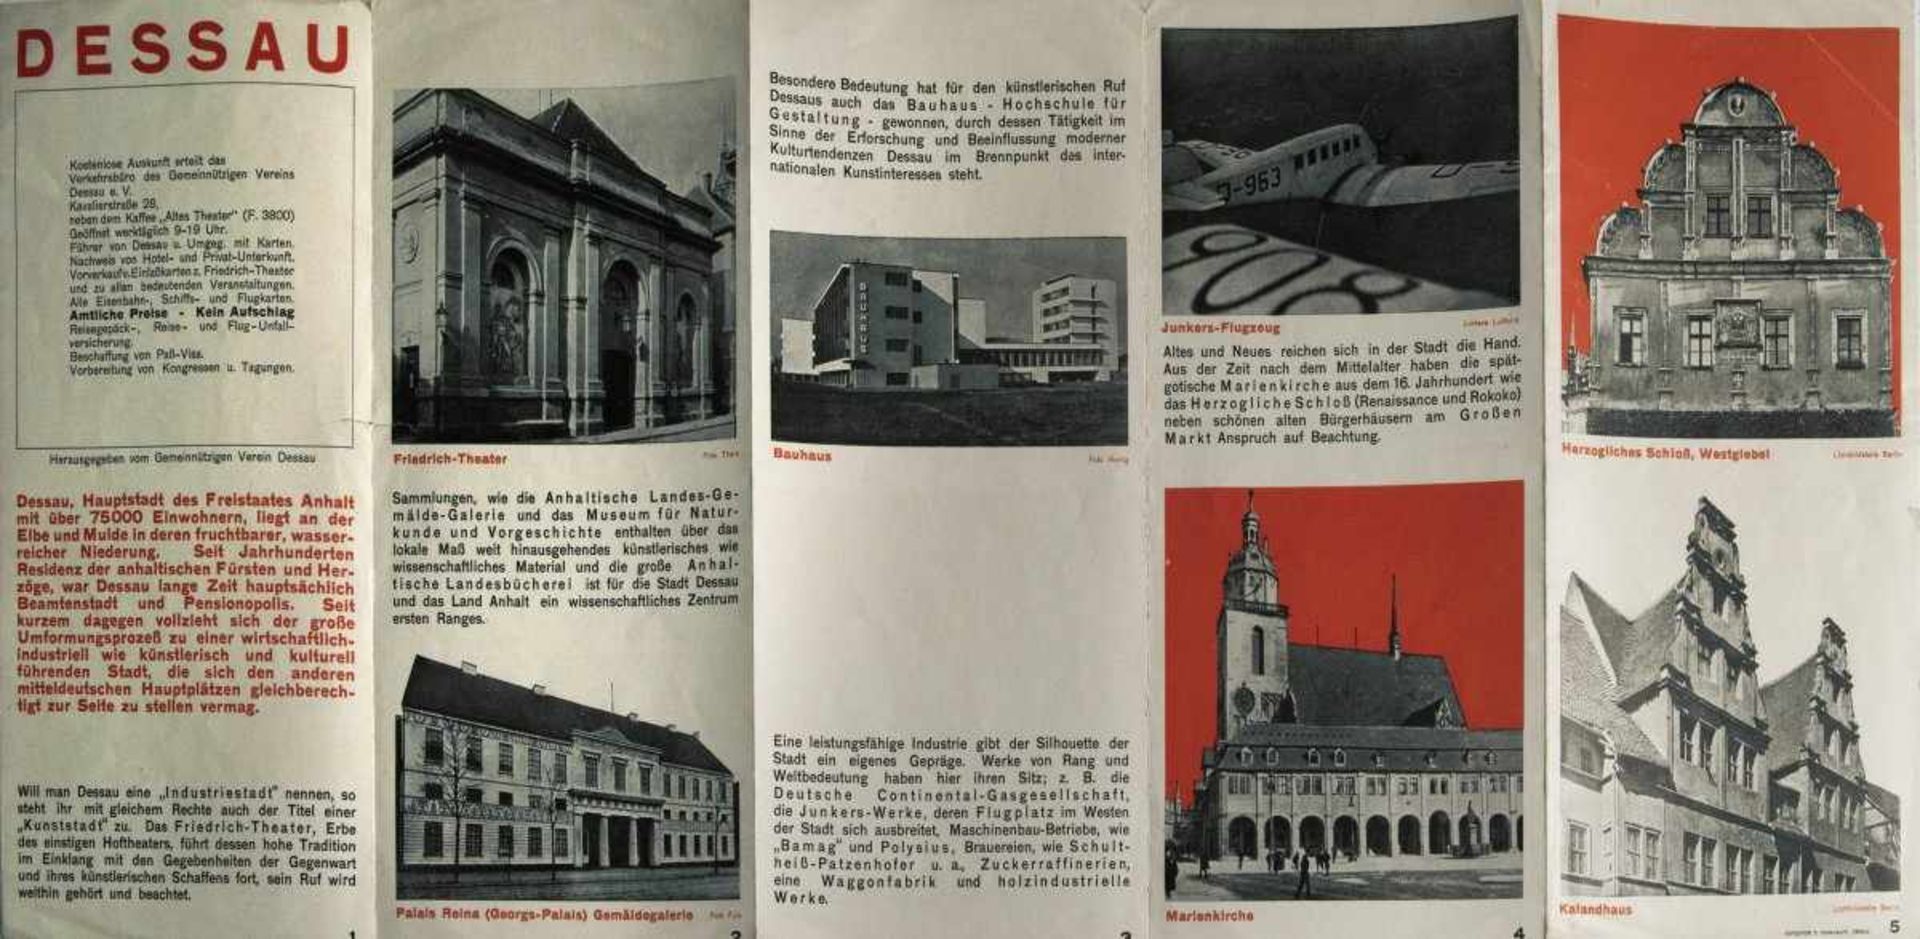 Herbert Bayer, Faltprospekt 'Dessau', 1927Faltprospekt 'Dessau', 192721 x 10,5-52,3 cm. Buchdruck. - Bild 2 aus 4